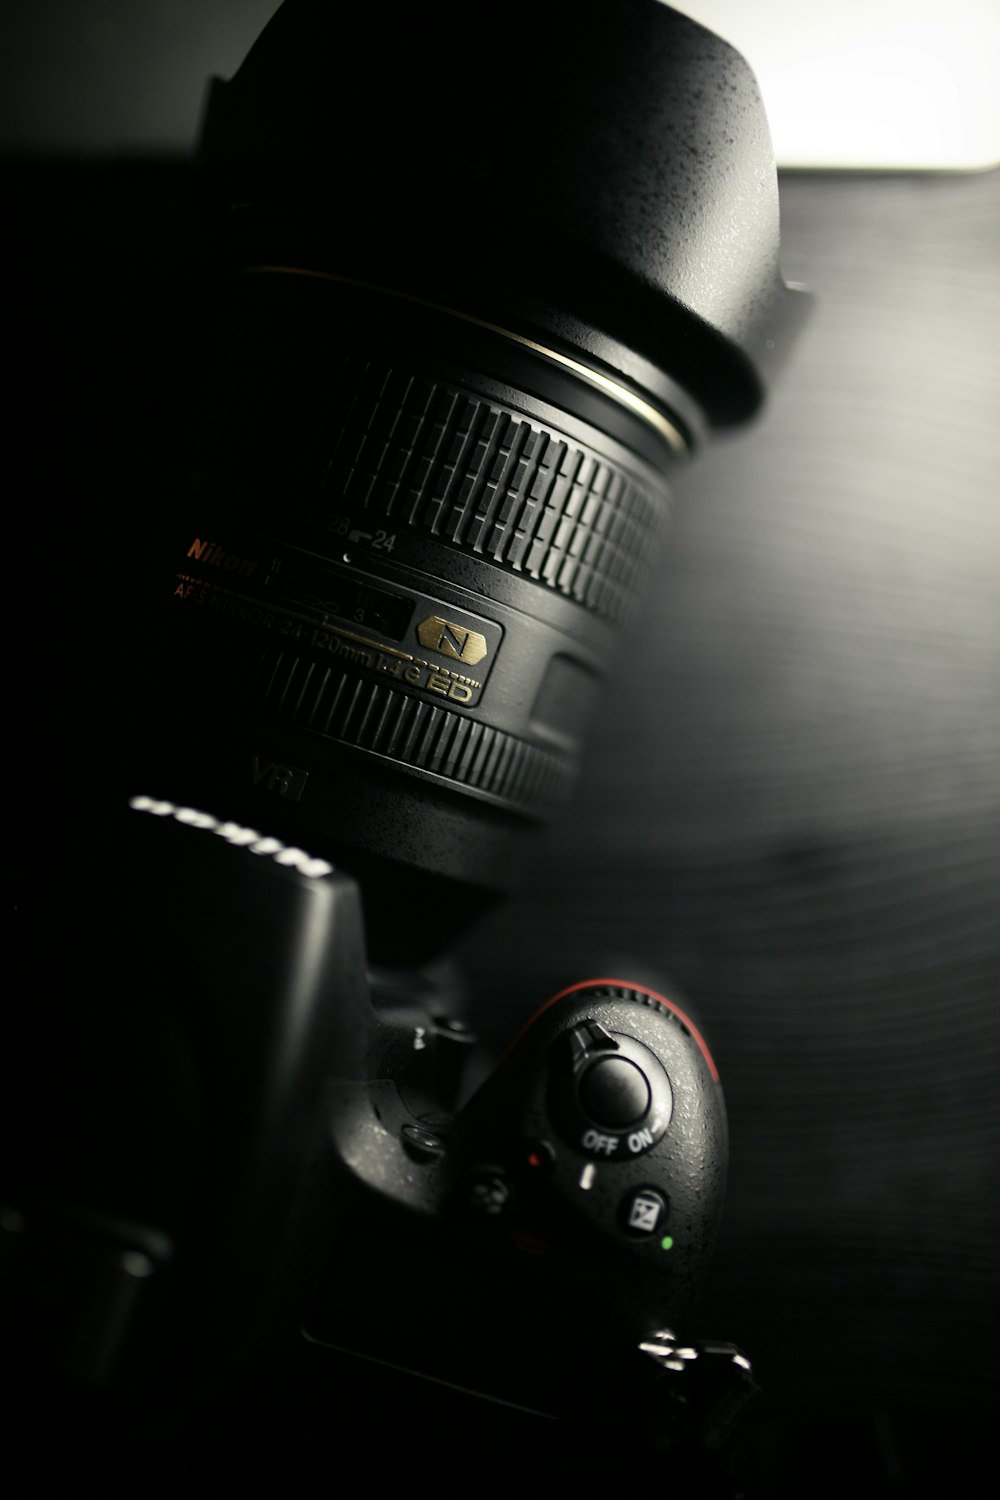 Fotocamera DSLR Nikon nera sul tavolo di legno marrone